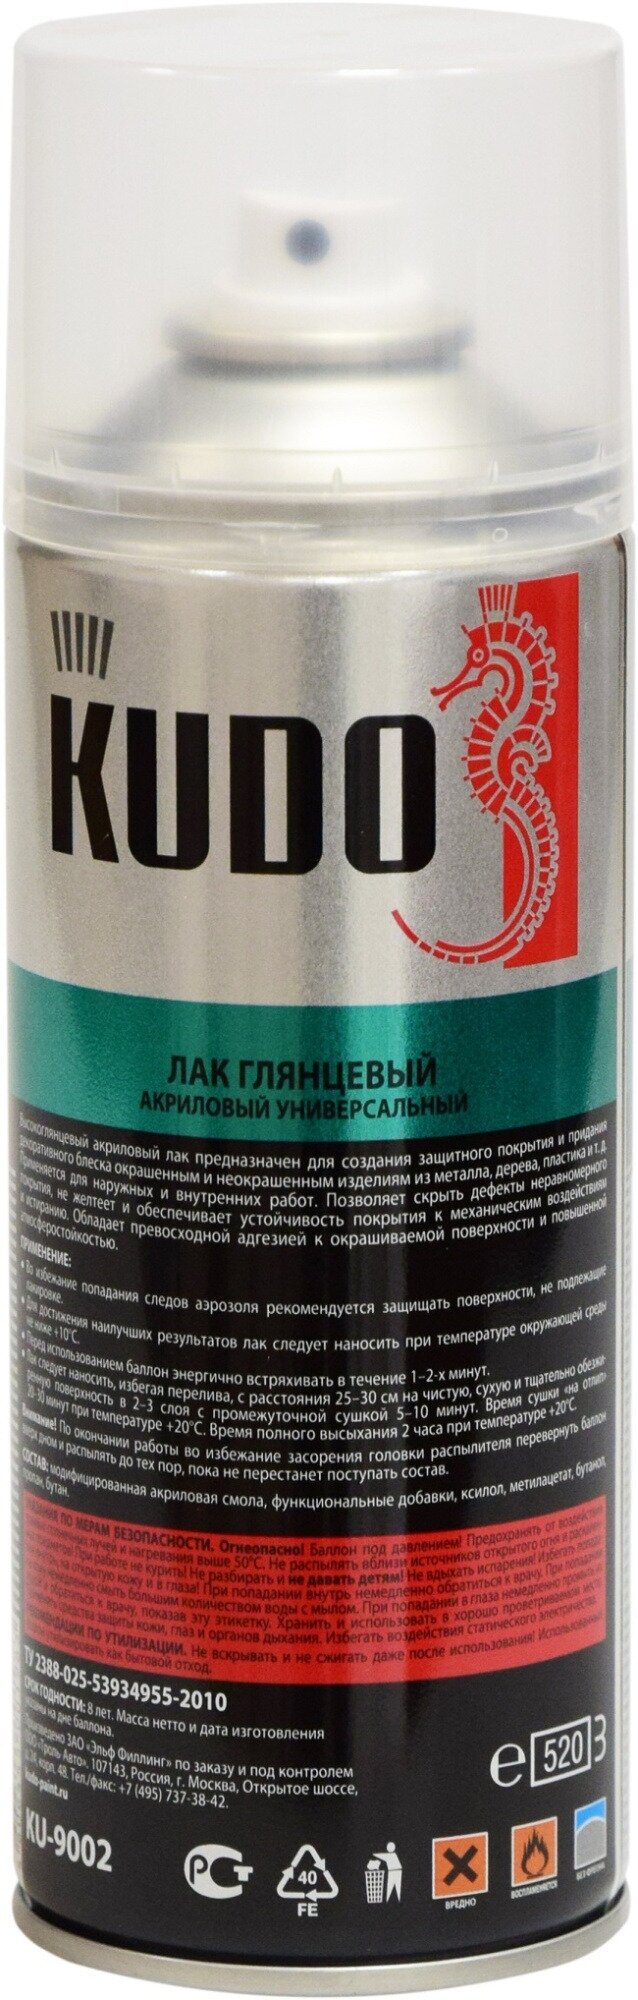 Лак универсальный акриловый Kudo глянцевый, KU-9002